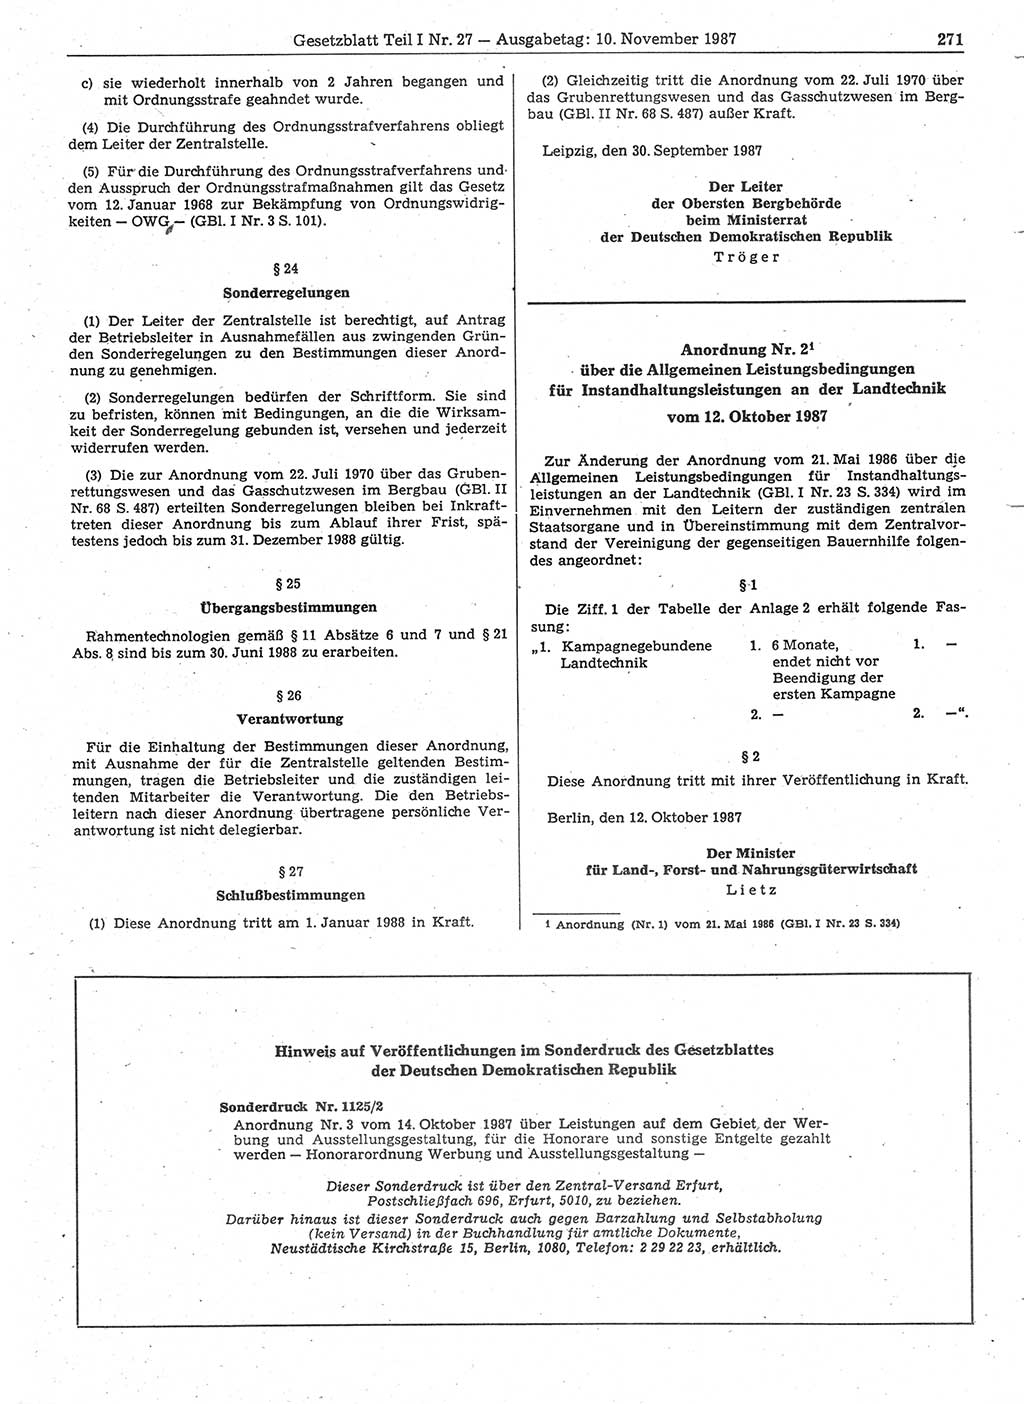 Gesetzblatt (GBl.) der Deutschen Demokratischen Republik (DDR) Teil Ⅰ 1987, Seite 271 (GBl. DDR Ⅰ 1987, S. 271)